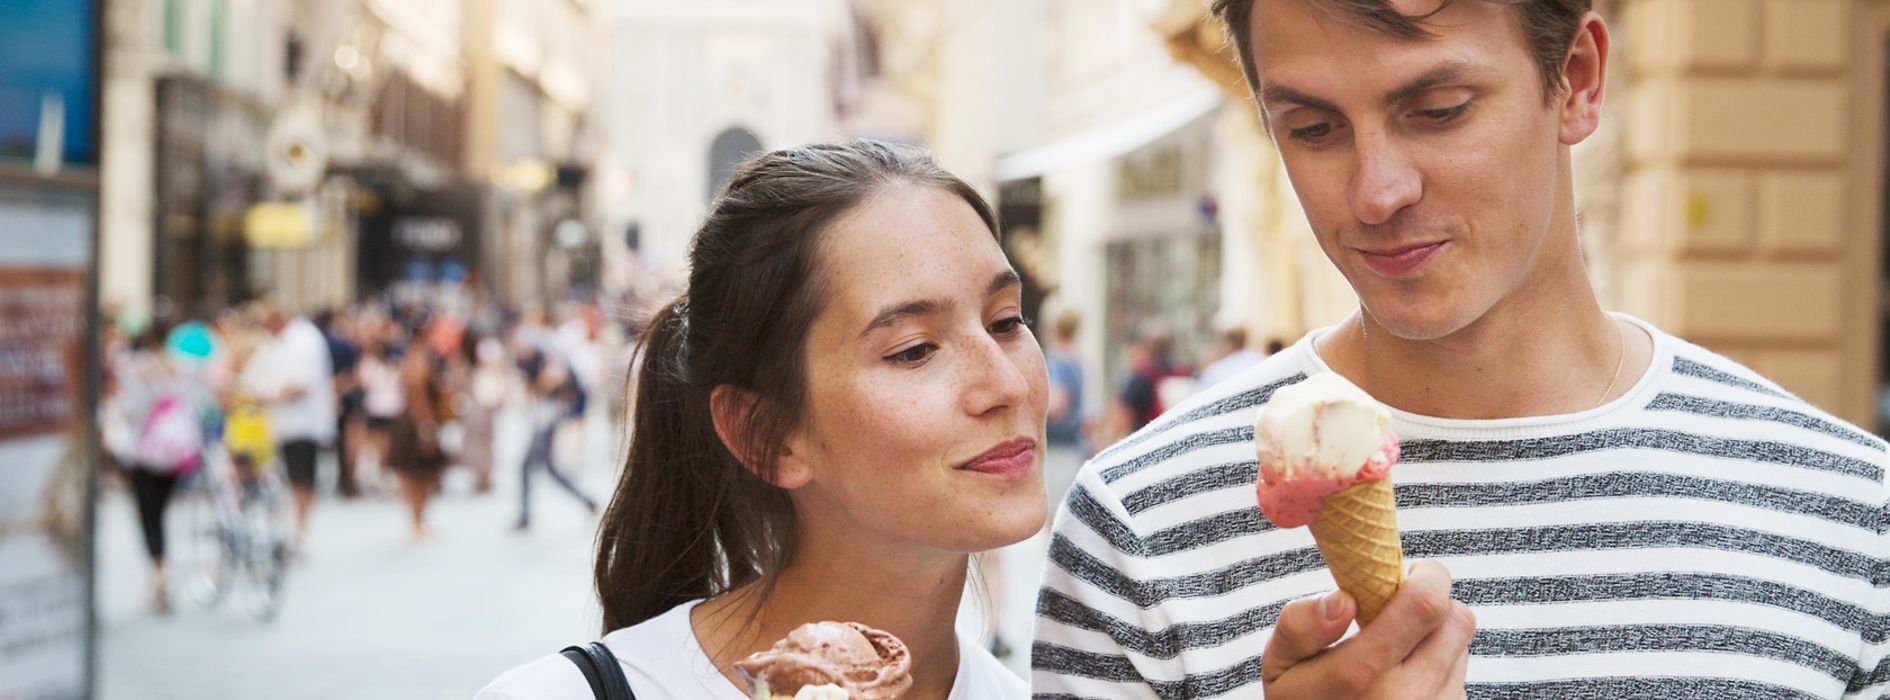 A passeggio nel centro storico, coppia di innamorati che mangiano un gelato